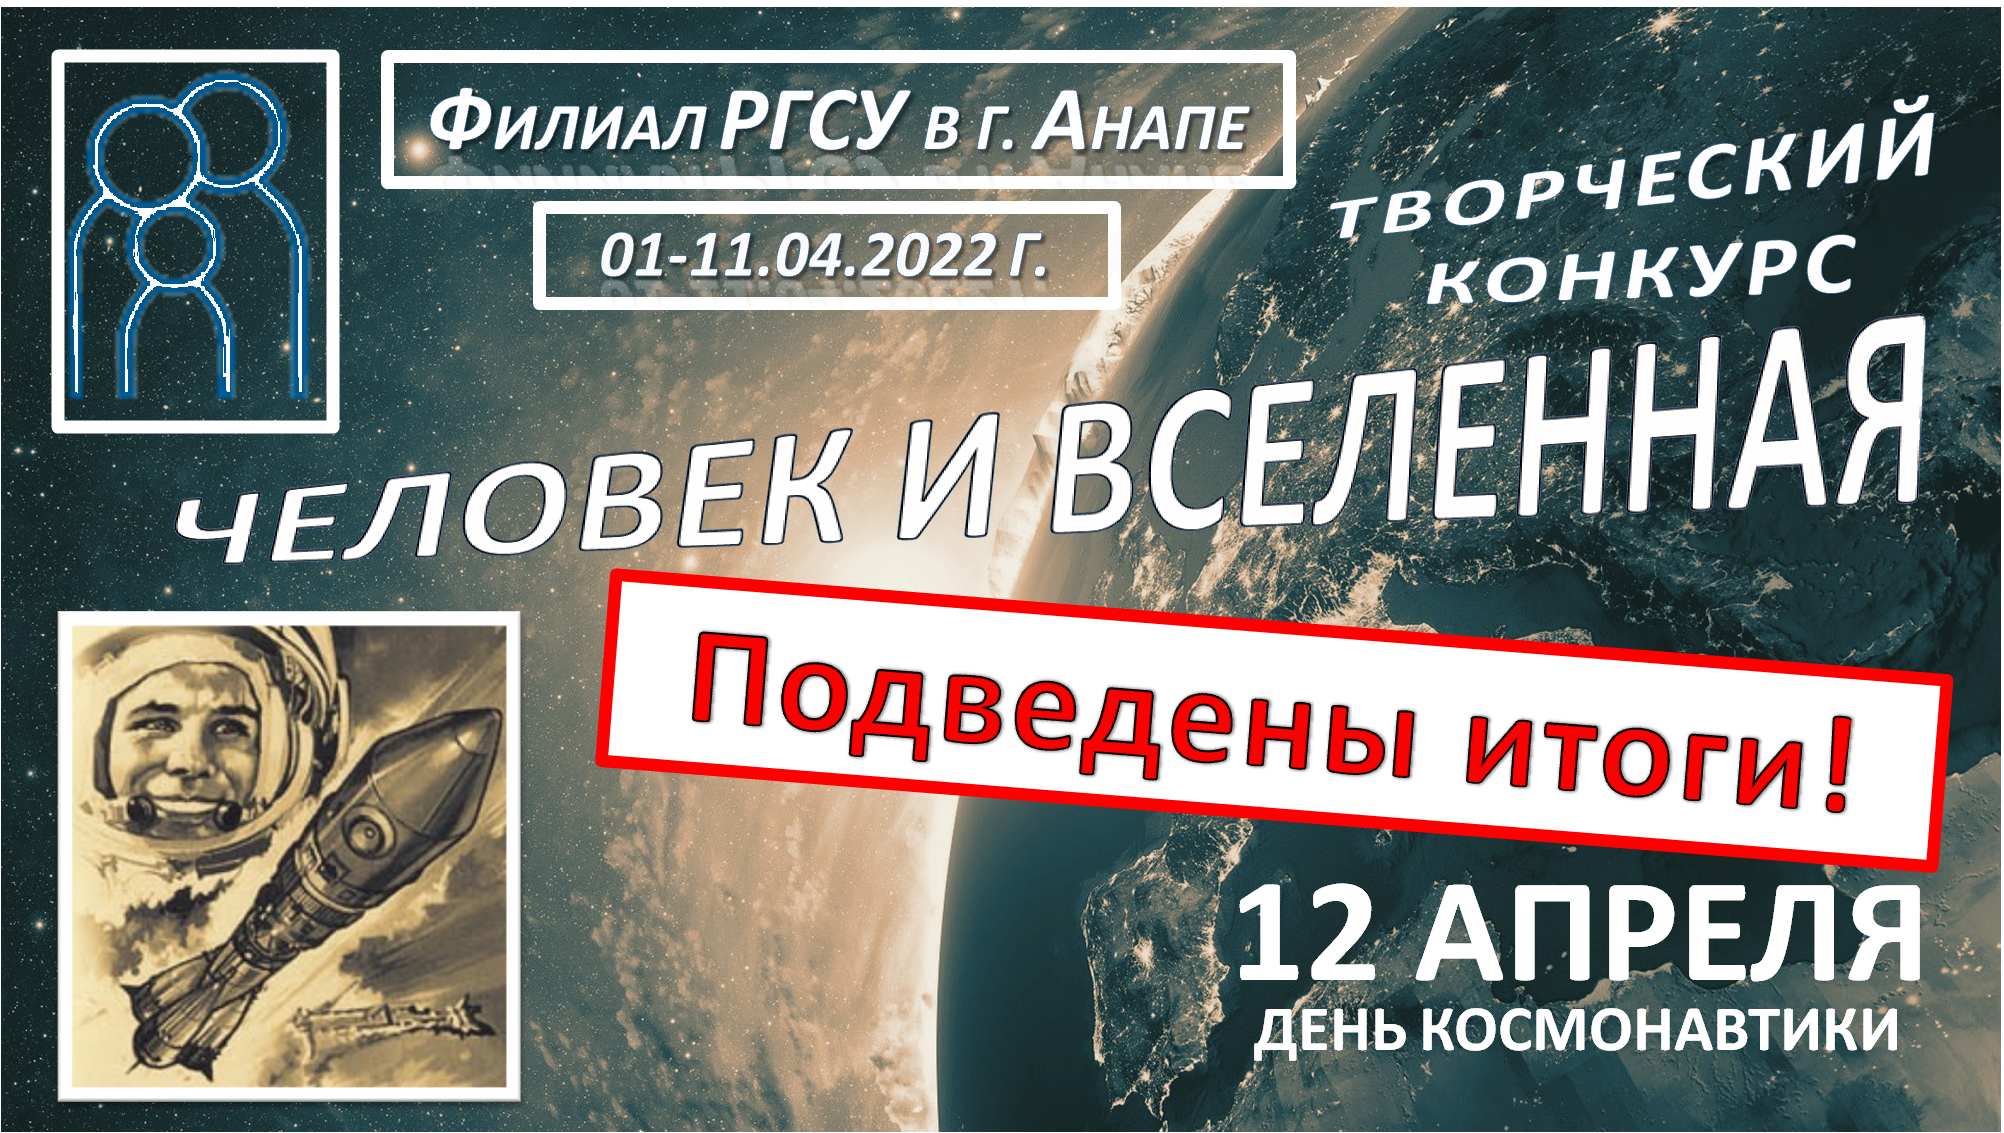 День космонавтики в филиале РГСУ в г. Анапе